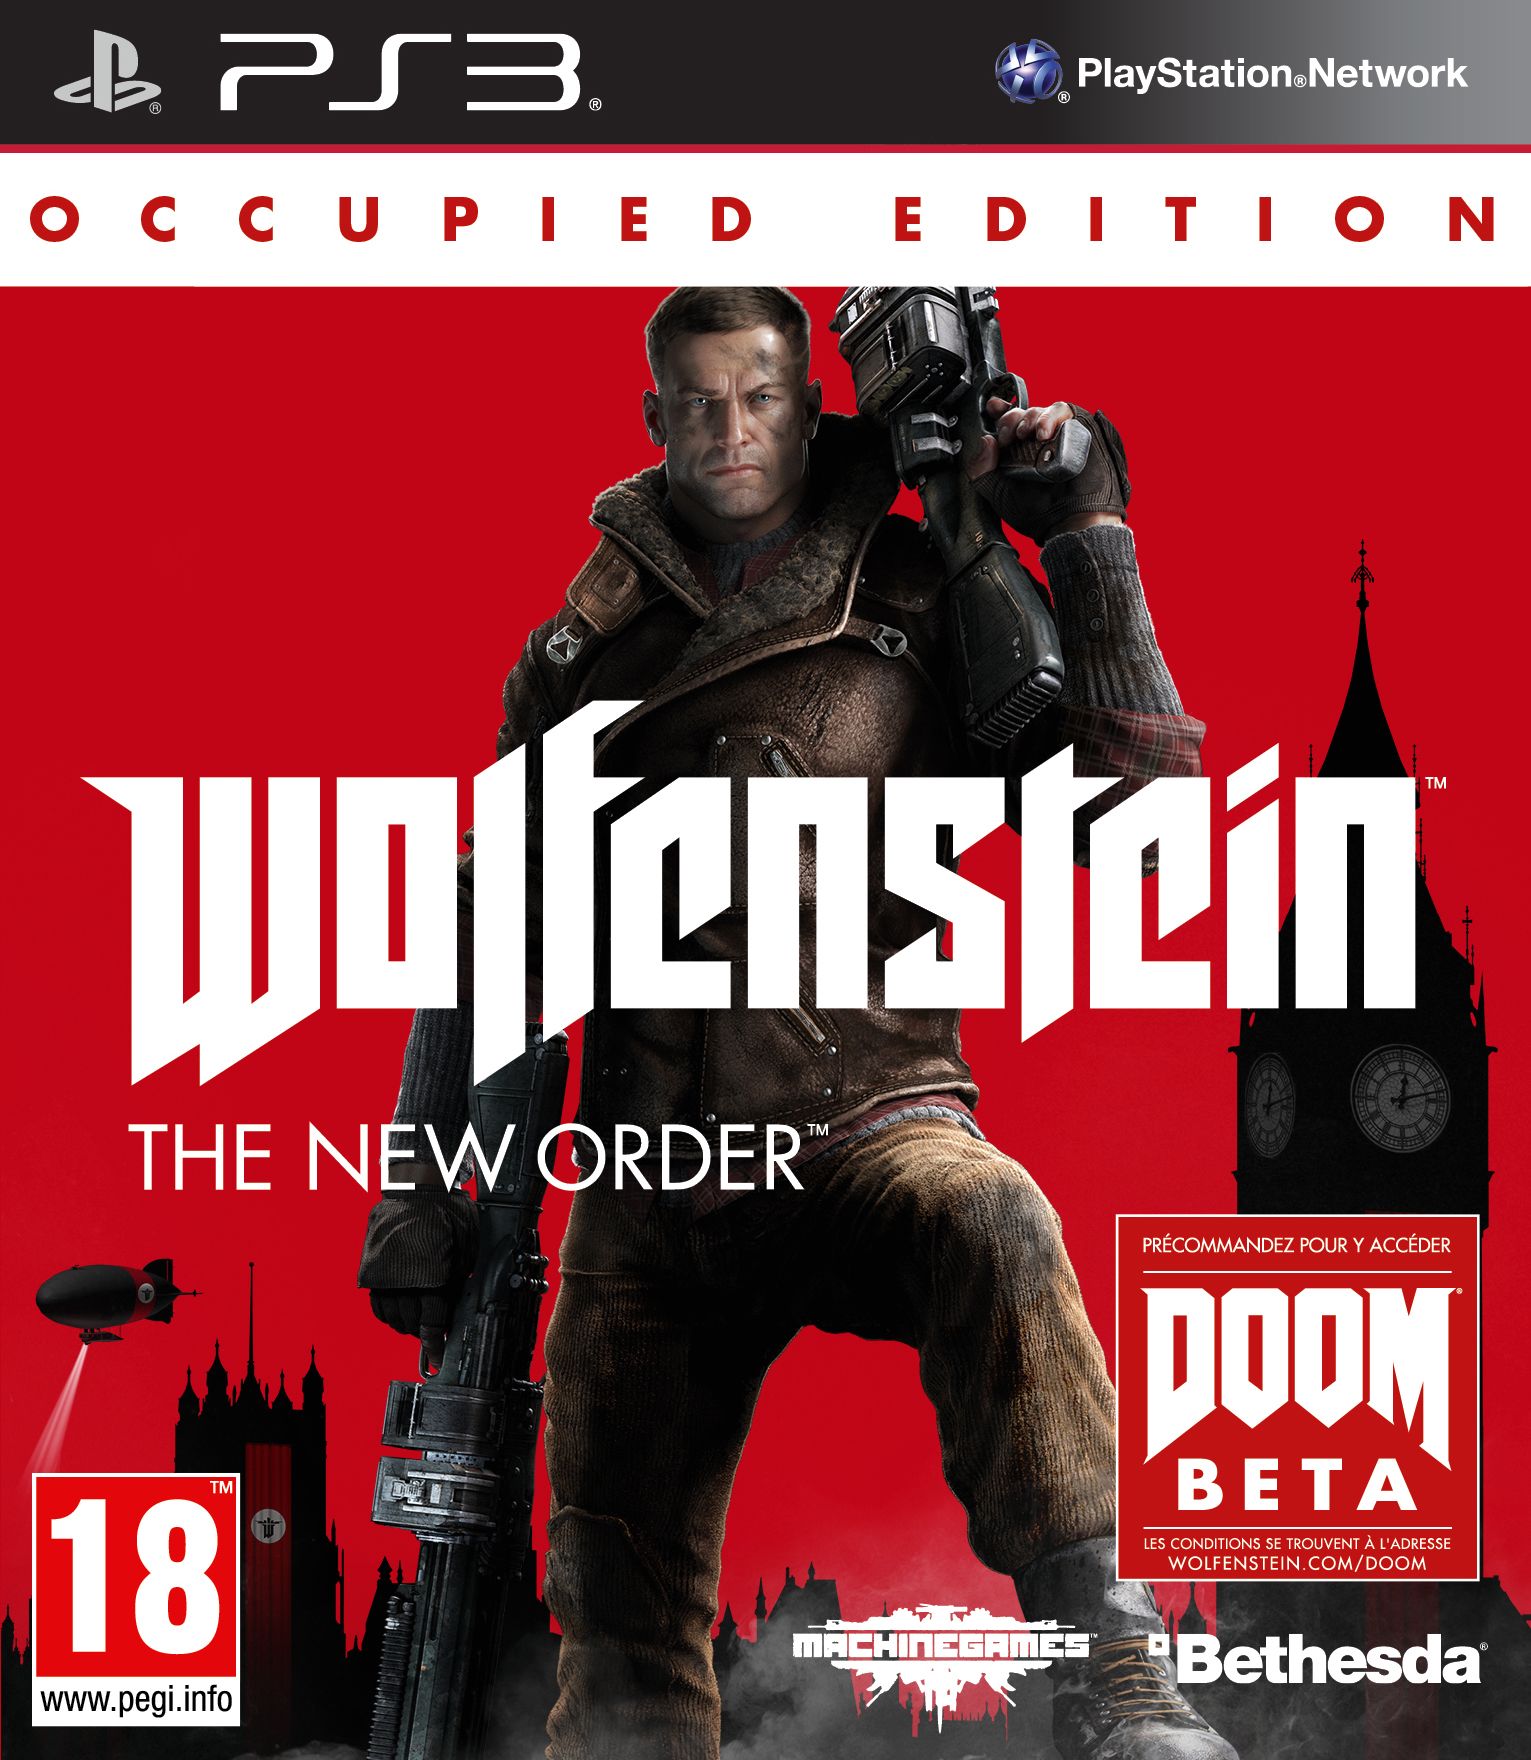 Wolfenstein : The New Order Occupied Edition